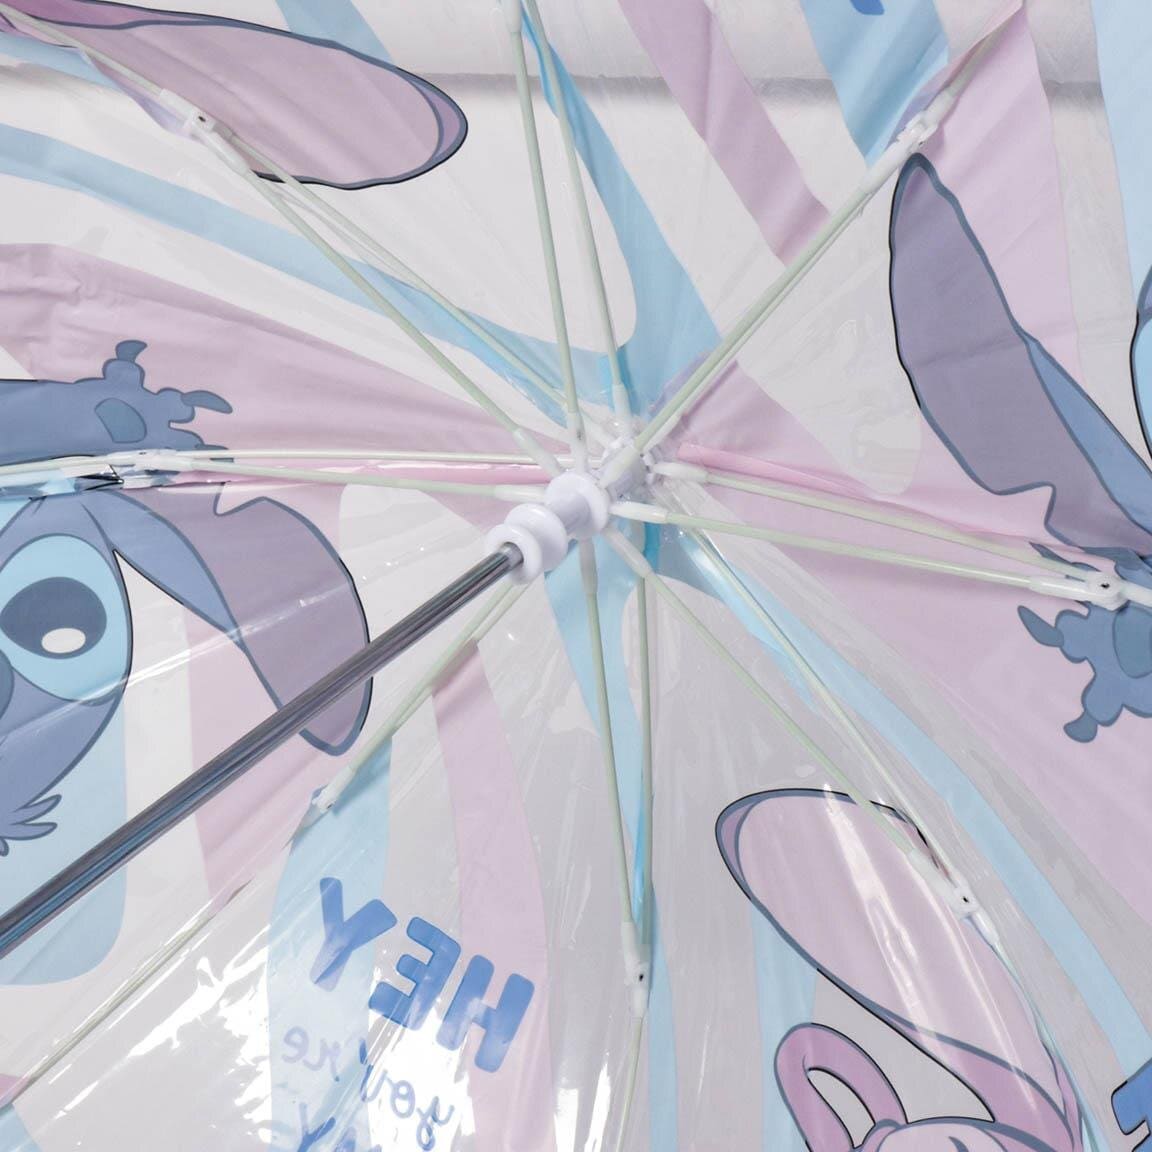 Lilo & Stitch - Kinderregenschirm